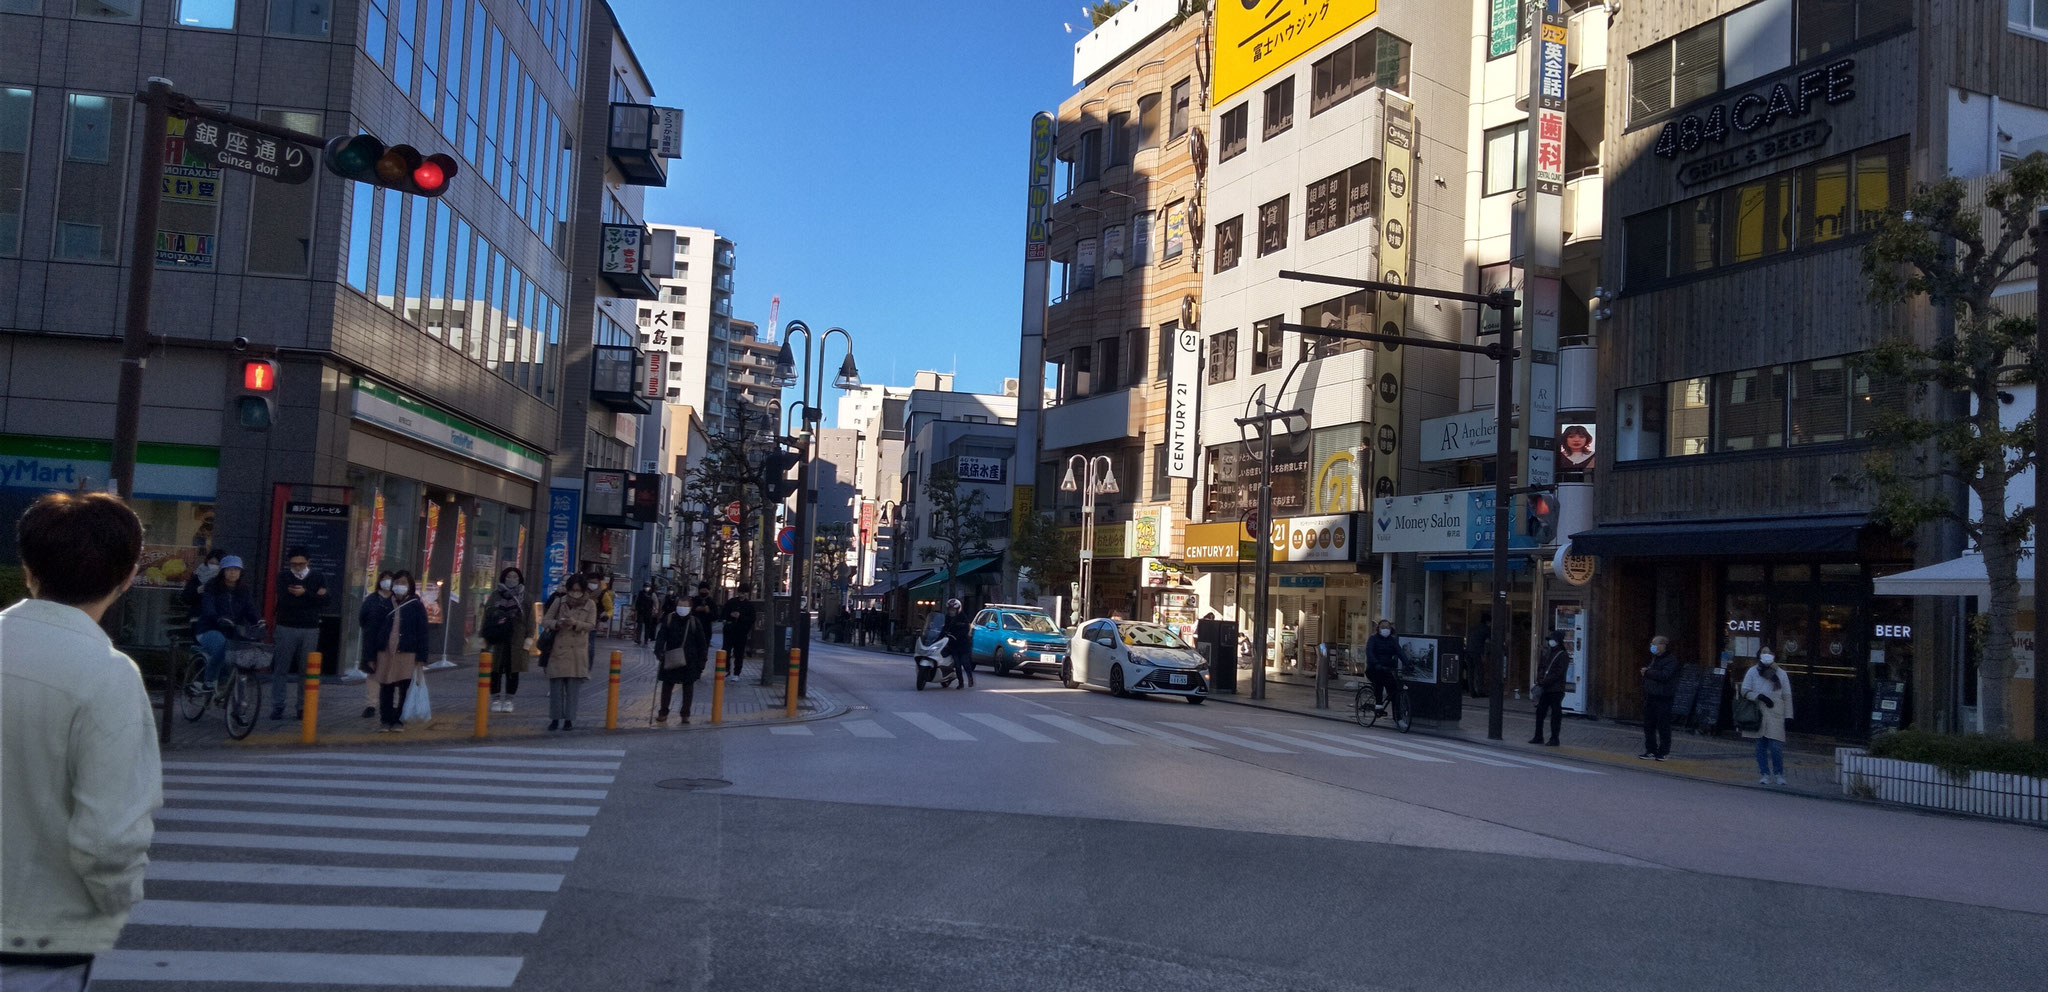 次の信号わたると銀座通り。ここを直進すると応援地点「藤沢小学校前」。柳通りだったり銀座通りだったり